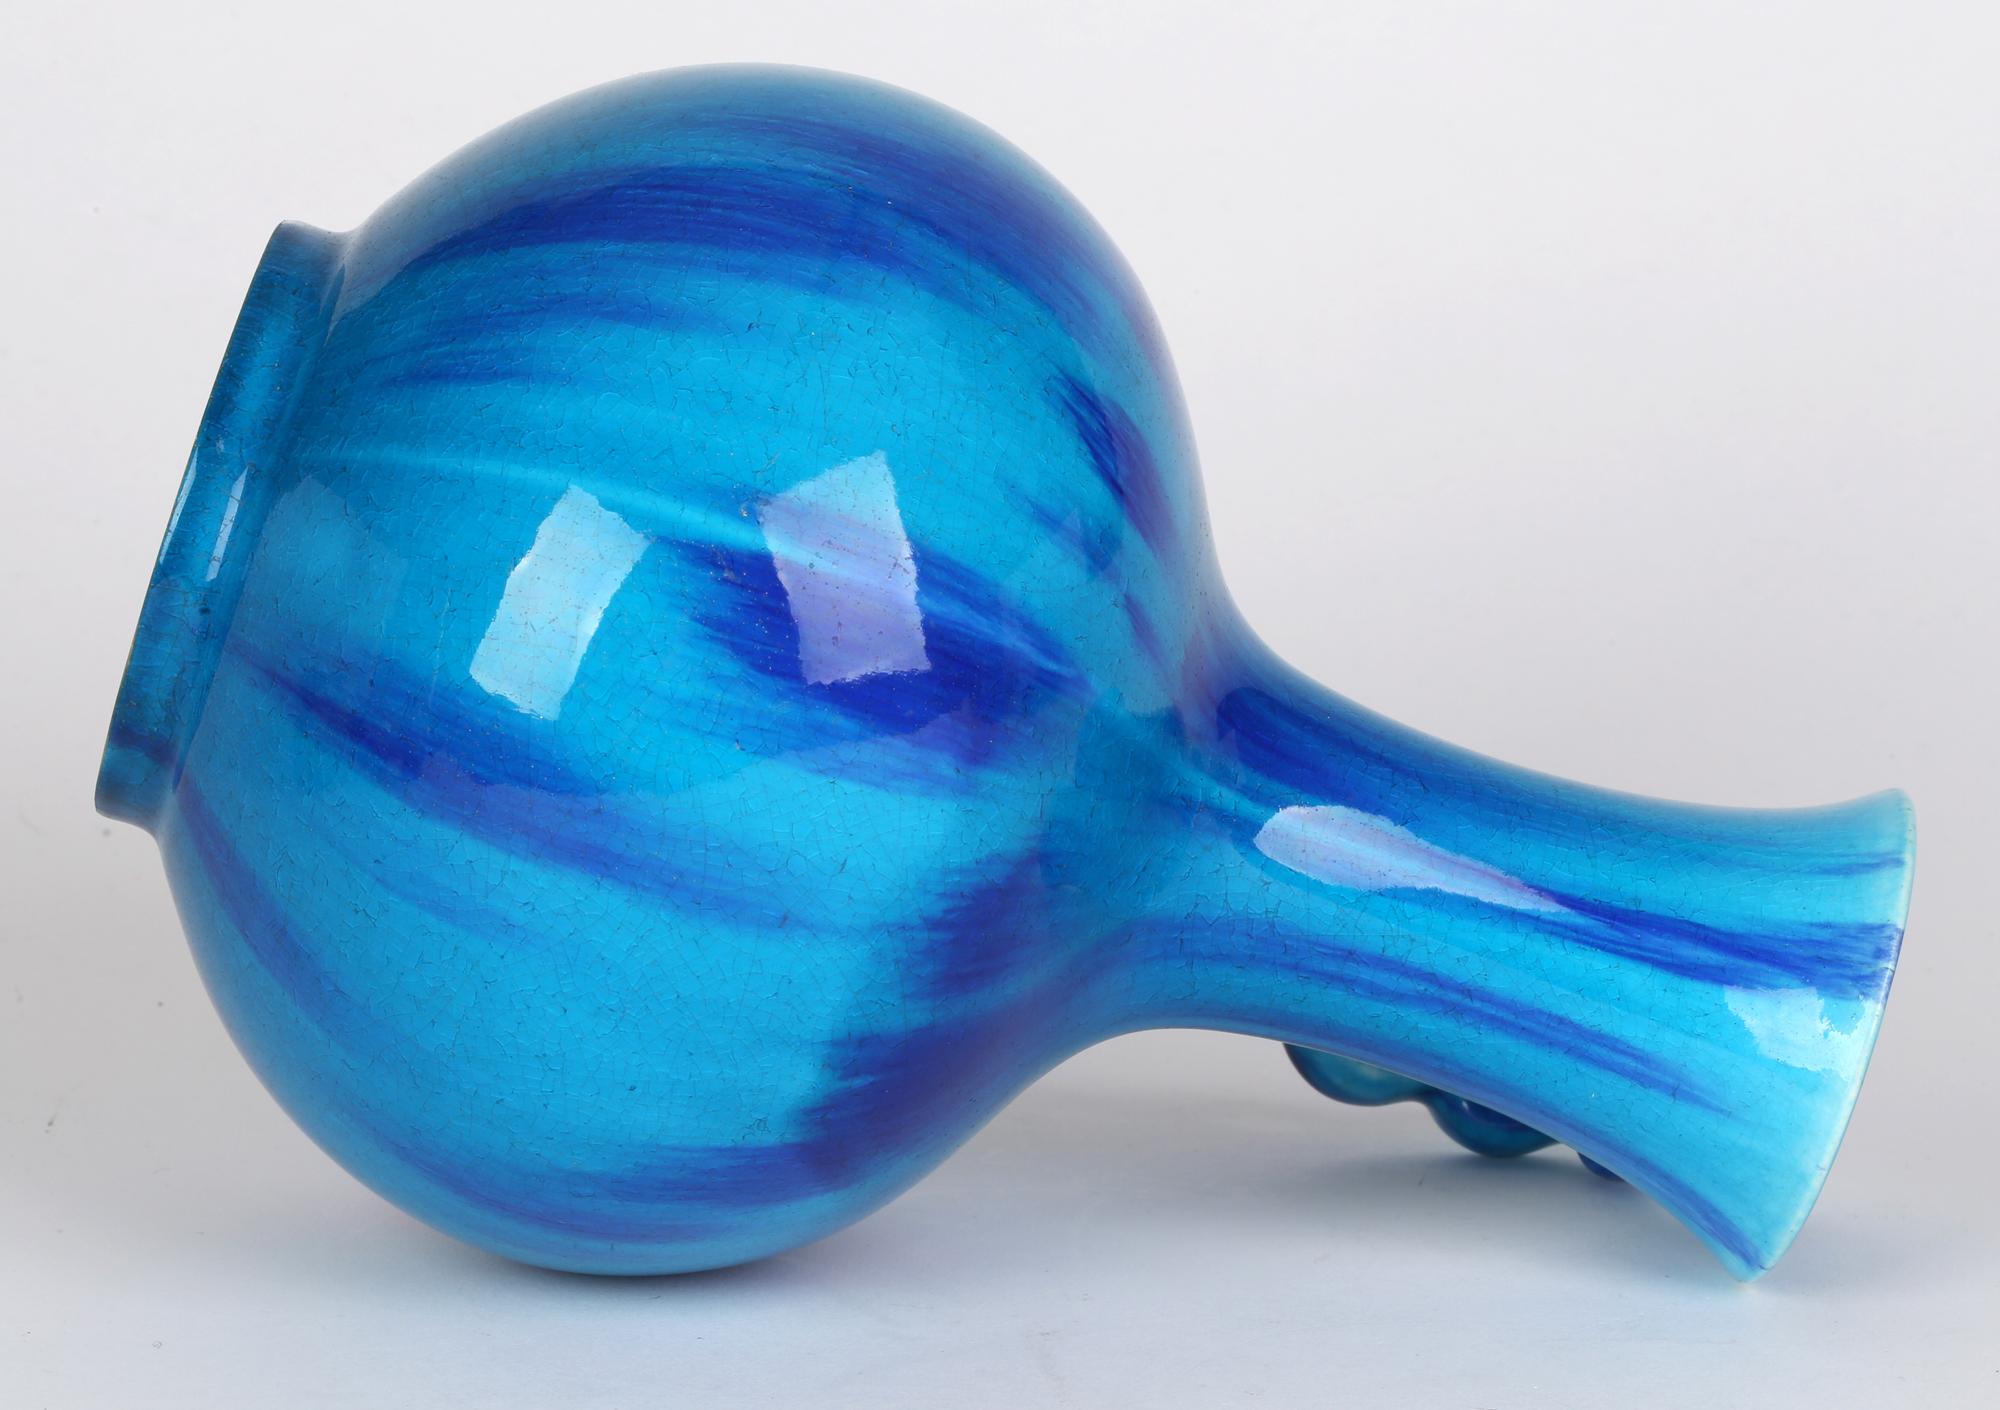 Minton Aesthetic Movement Blue & Turquoise Glazed Handled Art Pottery Vase 10